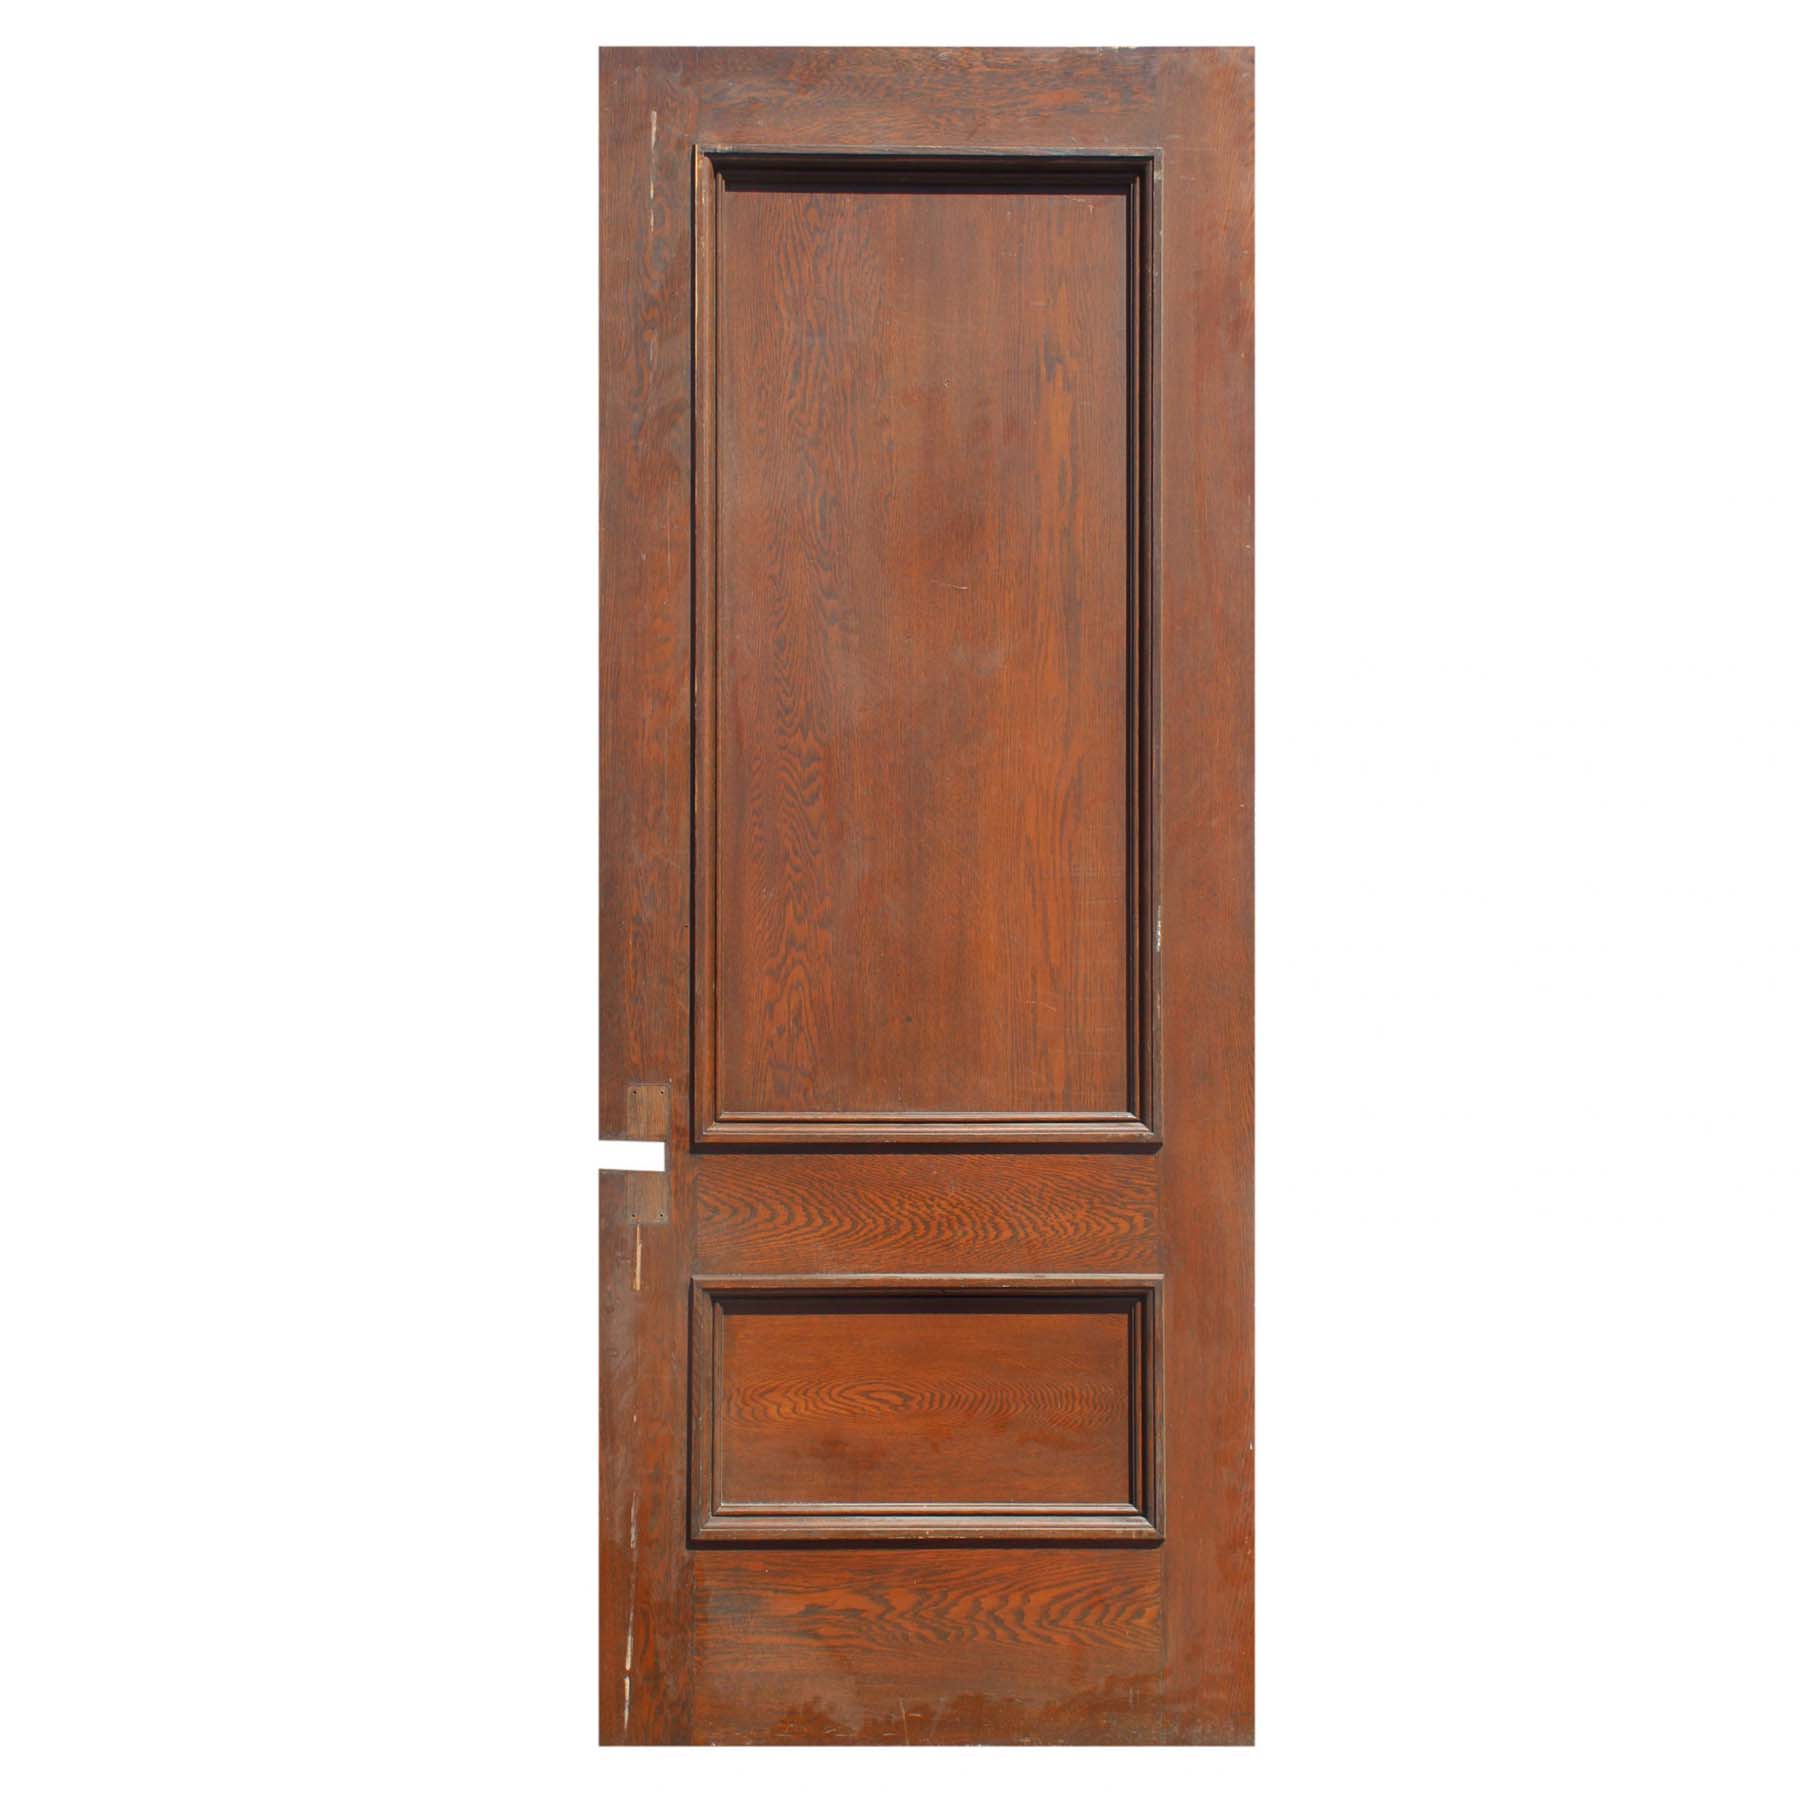 SOLD Reclaimed 38” Solid Oak Door -67698